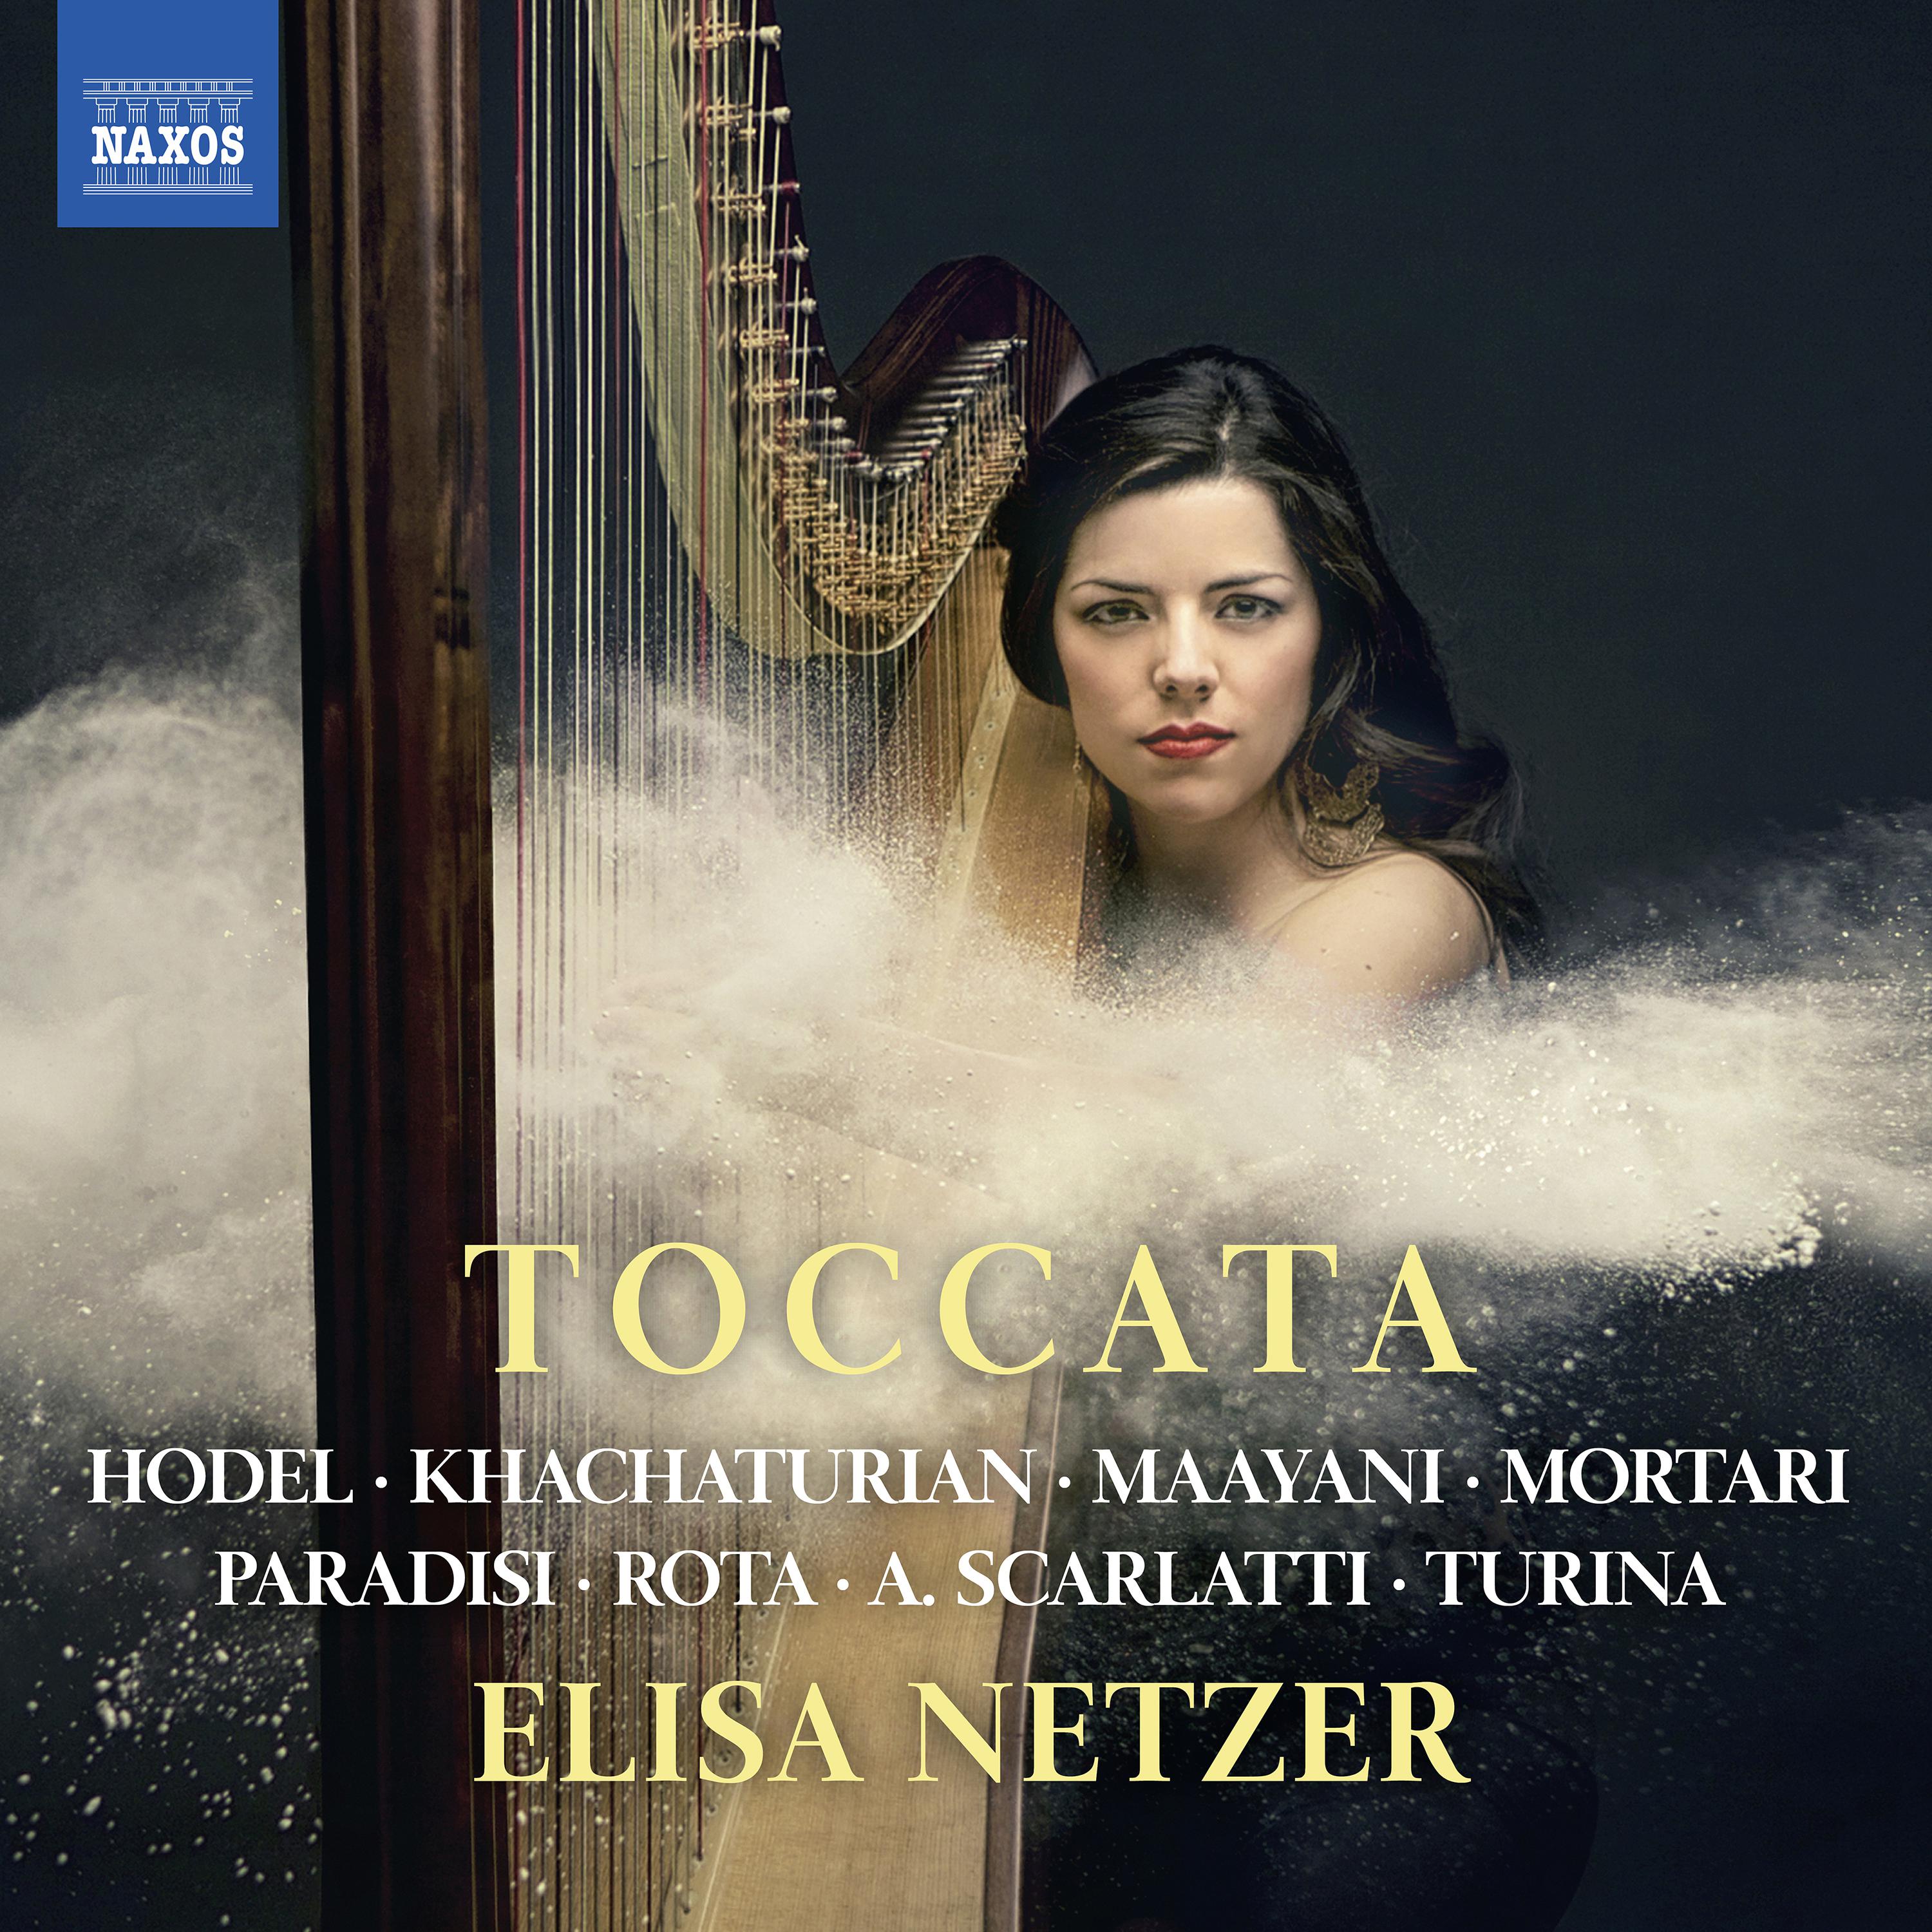 Harp Recital: Netzer, Elisa - HODEL, S. / KHACHATURIAN, A.I. / MAAYANI, A. / MORTARI, V. / PARADIES, P.D. / ROTA, N. / SCARLATTI, A. (Toccata)